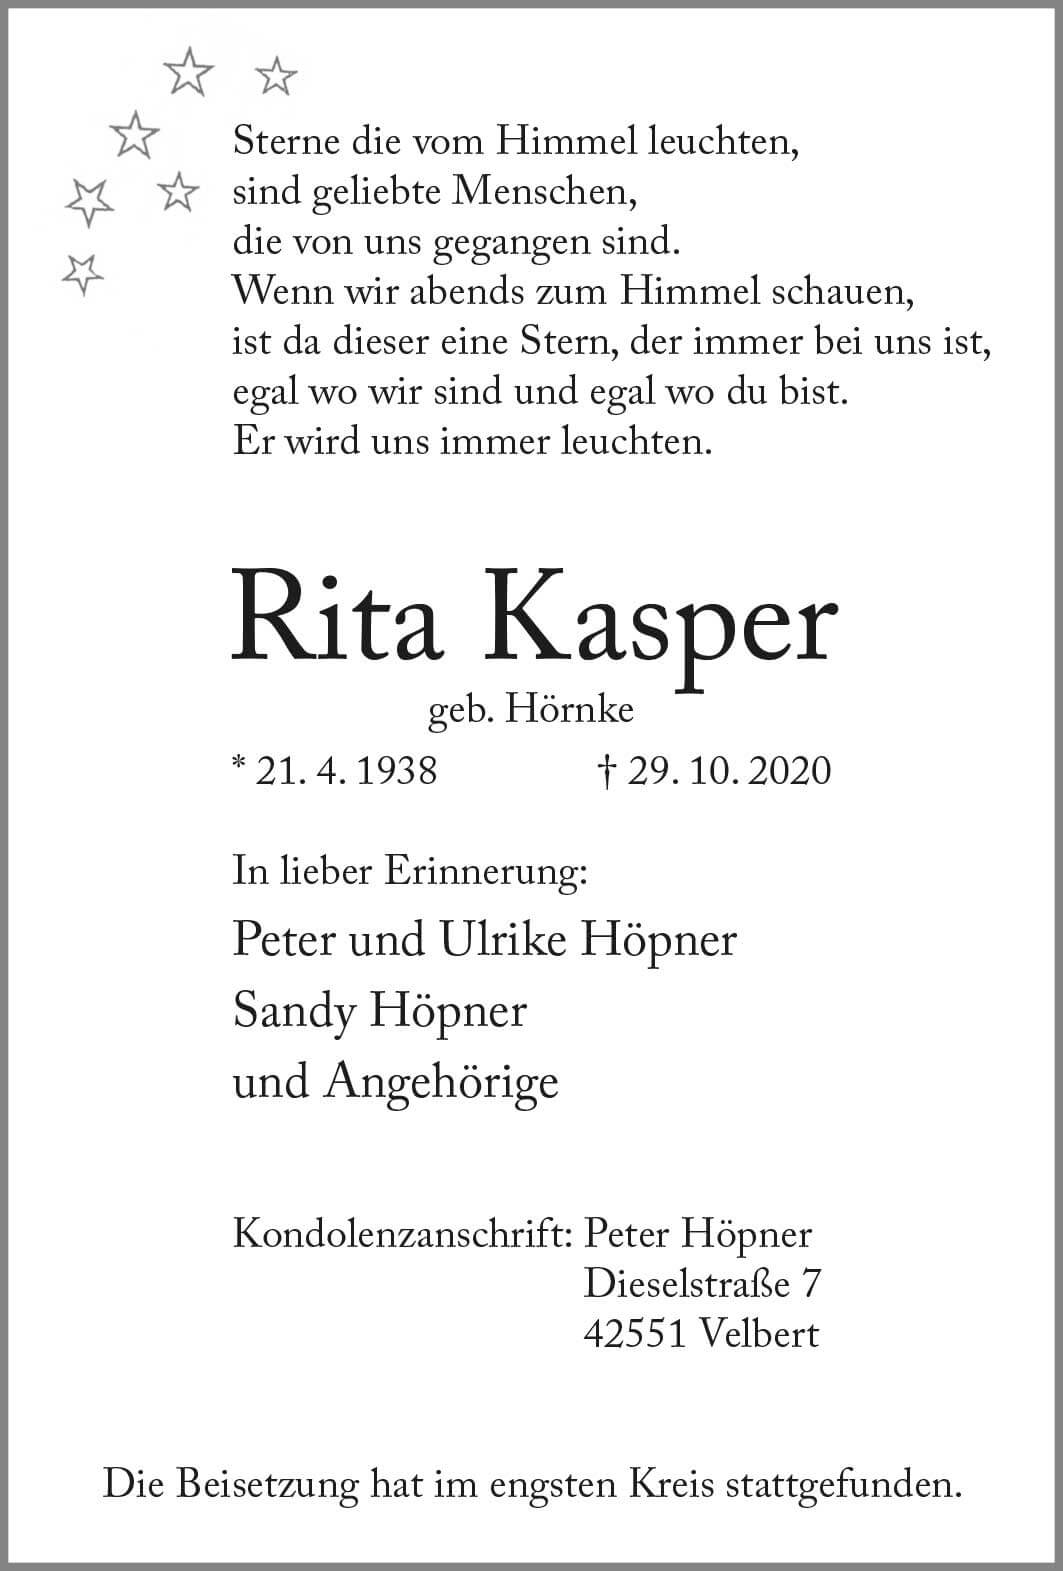 Rita Kasper † 29. 10. 2020